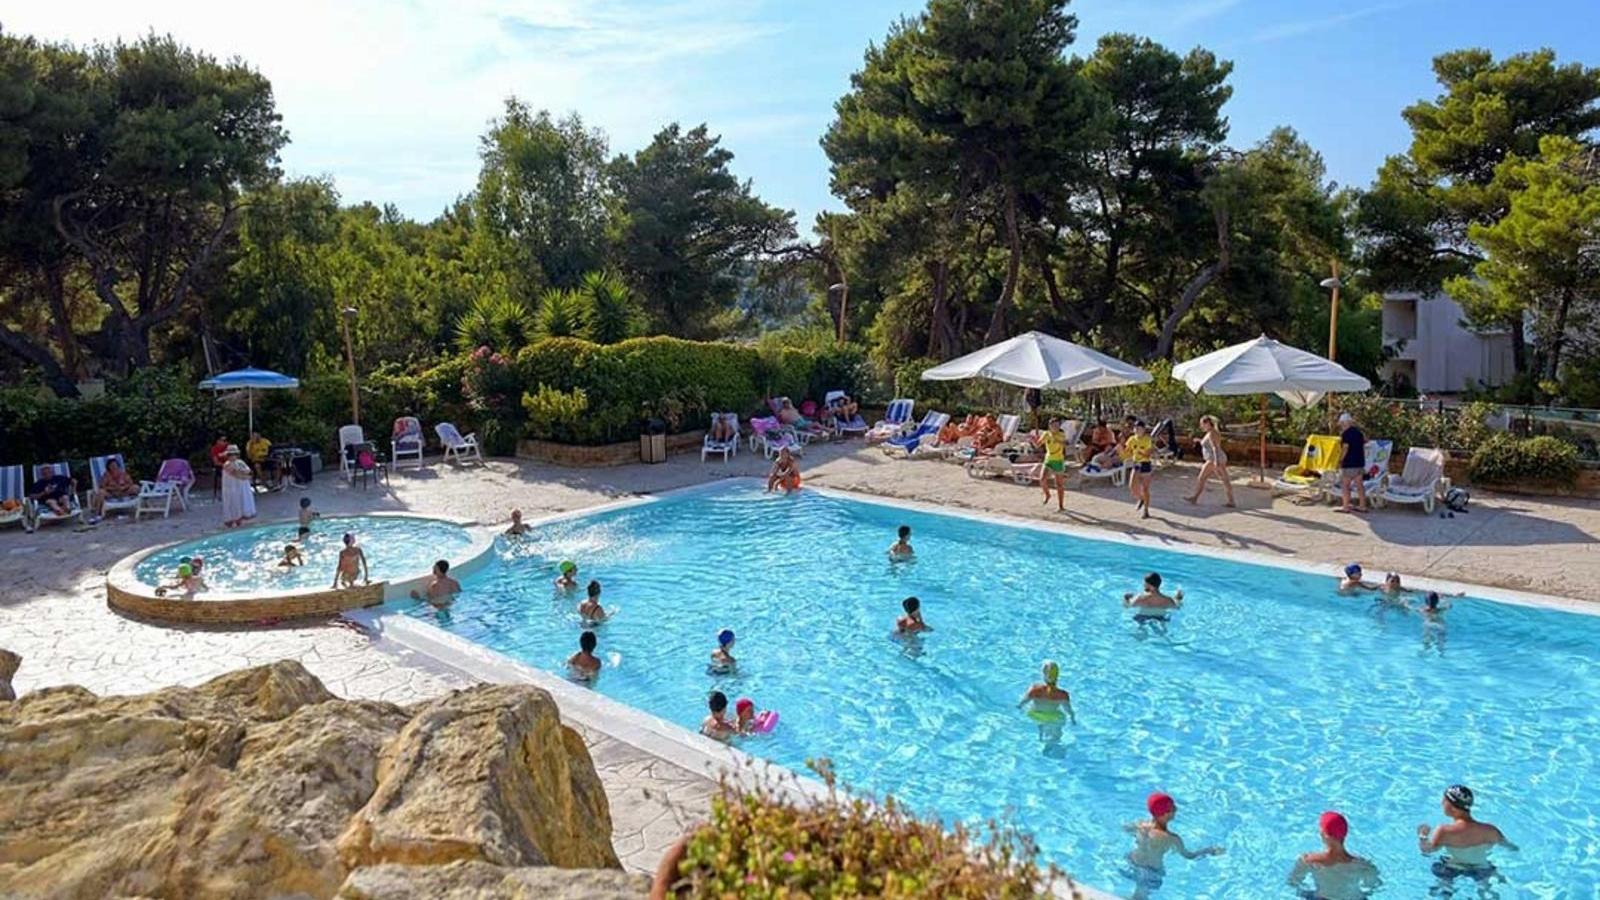 Albergo con piscina a Peschici - Hotel Paglianza Paradiso | Localtourism.it